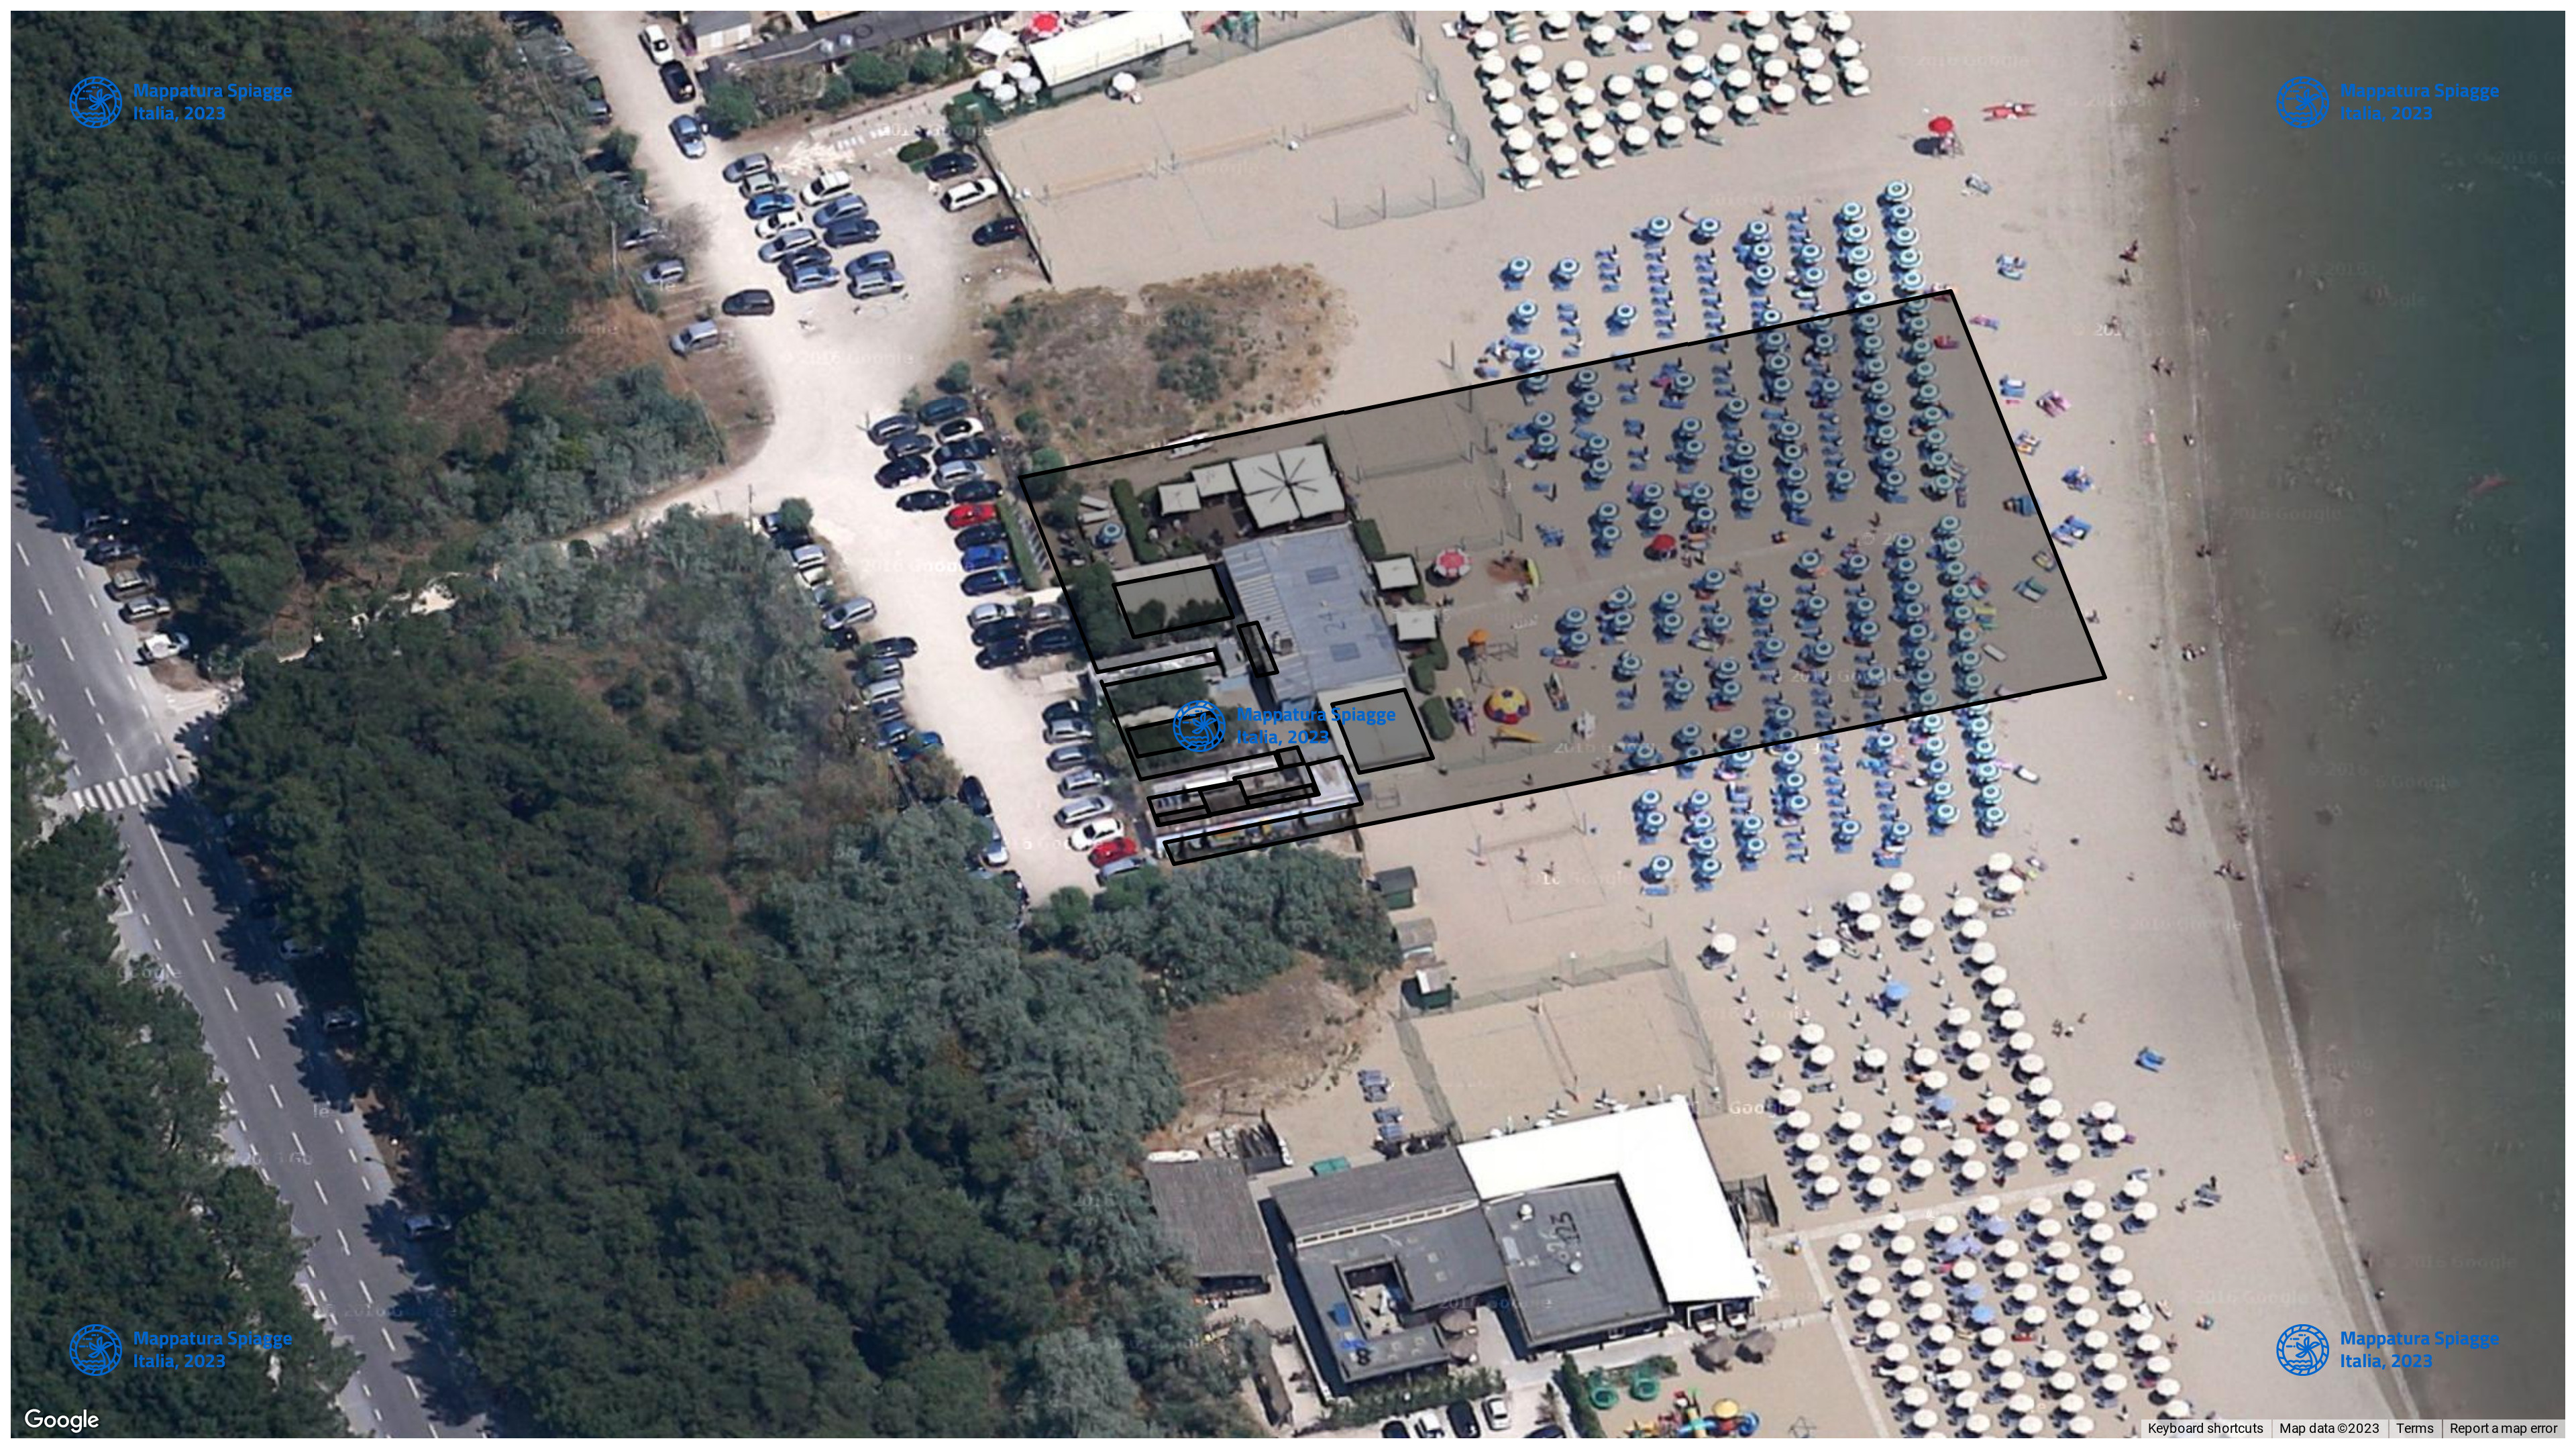 Foto Satellitare - Google Maps - Comune Ravenna, Concessione: N. 10 / 2011 del 16-09-2023